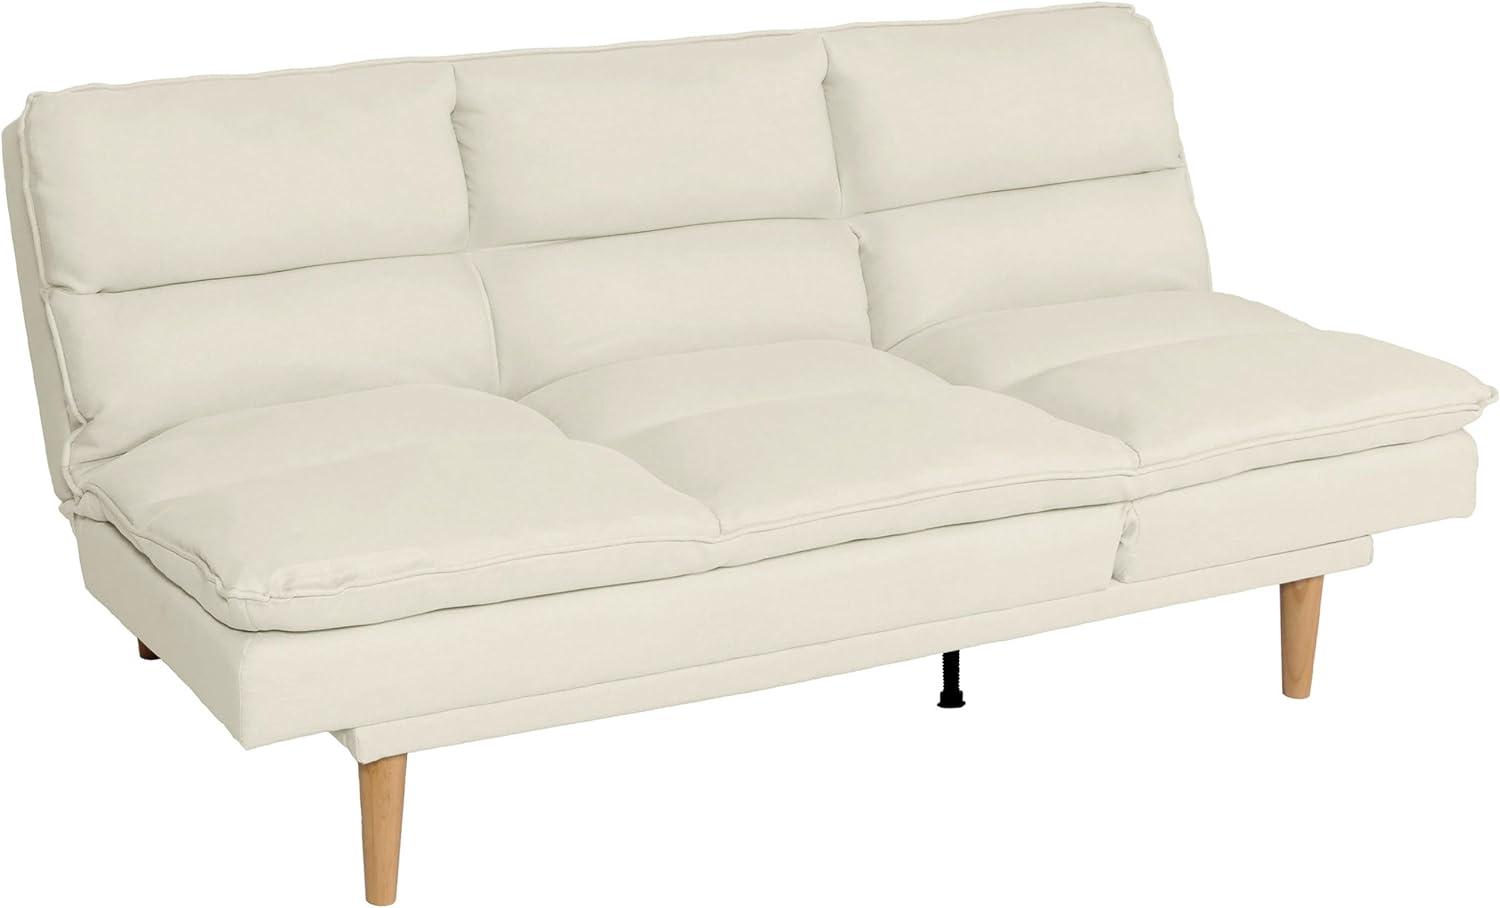 Schlafsofa HWC-M79, Gästebett Schlafcouch Couch Sofa, Schlaffunktion Liegefläche 180x110cm ~ Stoff/Textil creme Bild 1